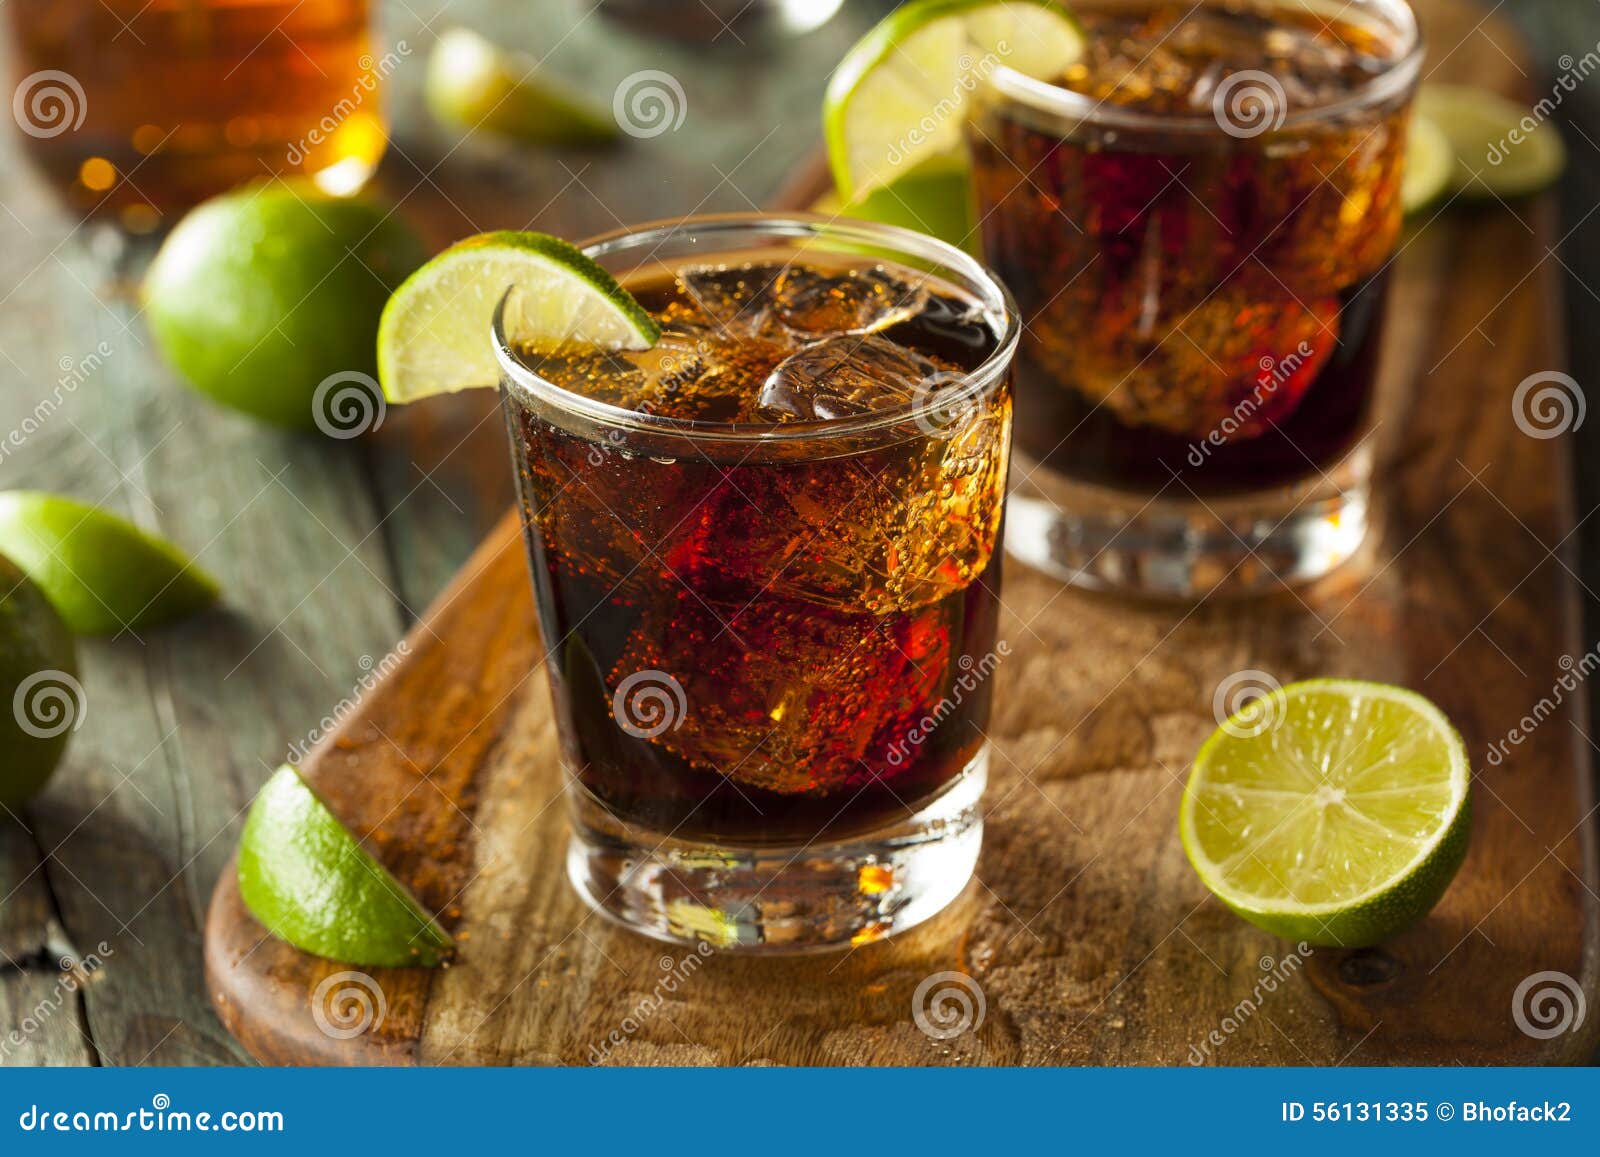 rum and cola cuba libre